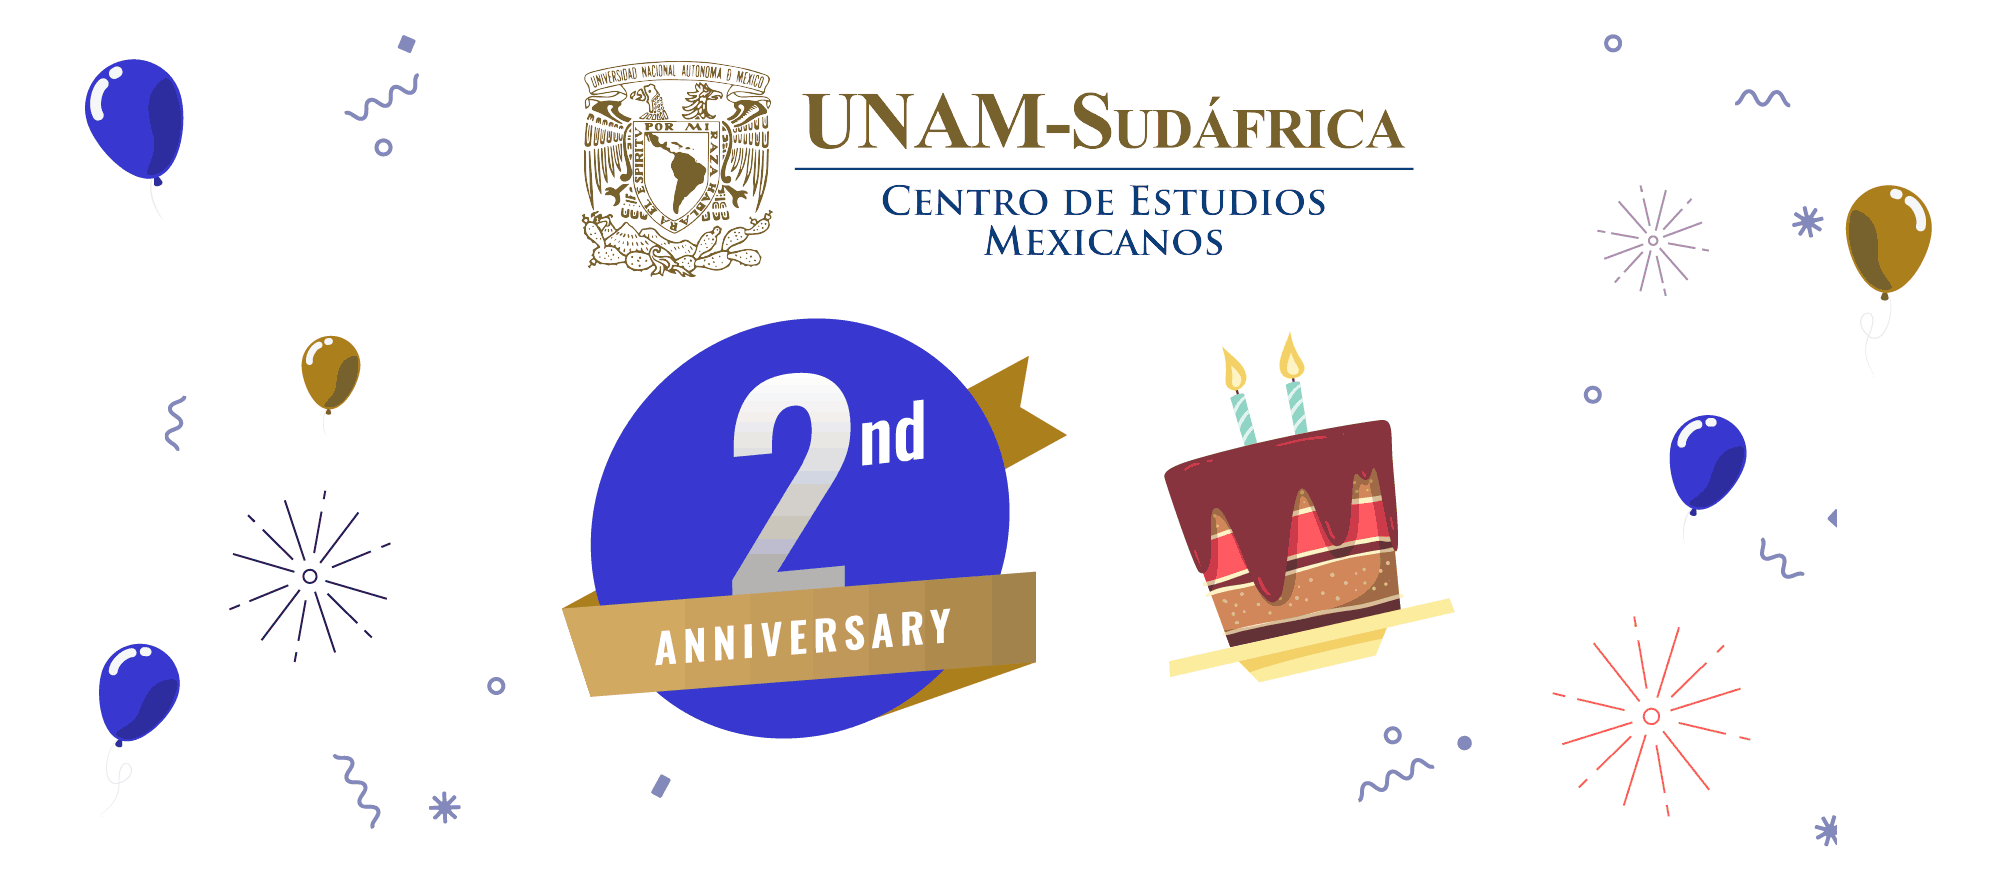 Segundo aniversario del Centro de Estudios Mexicanos UNAM-Sudáfrica.